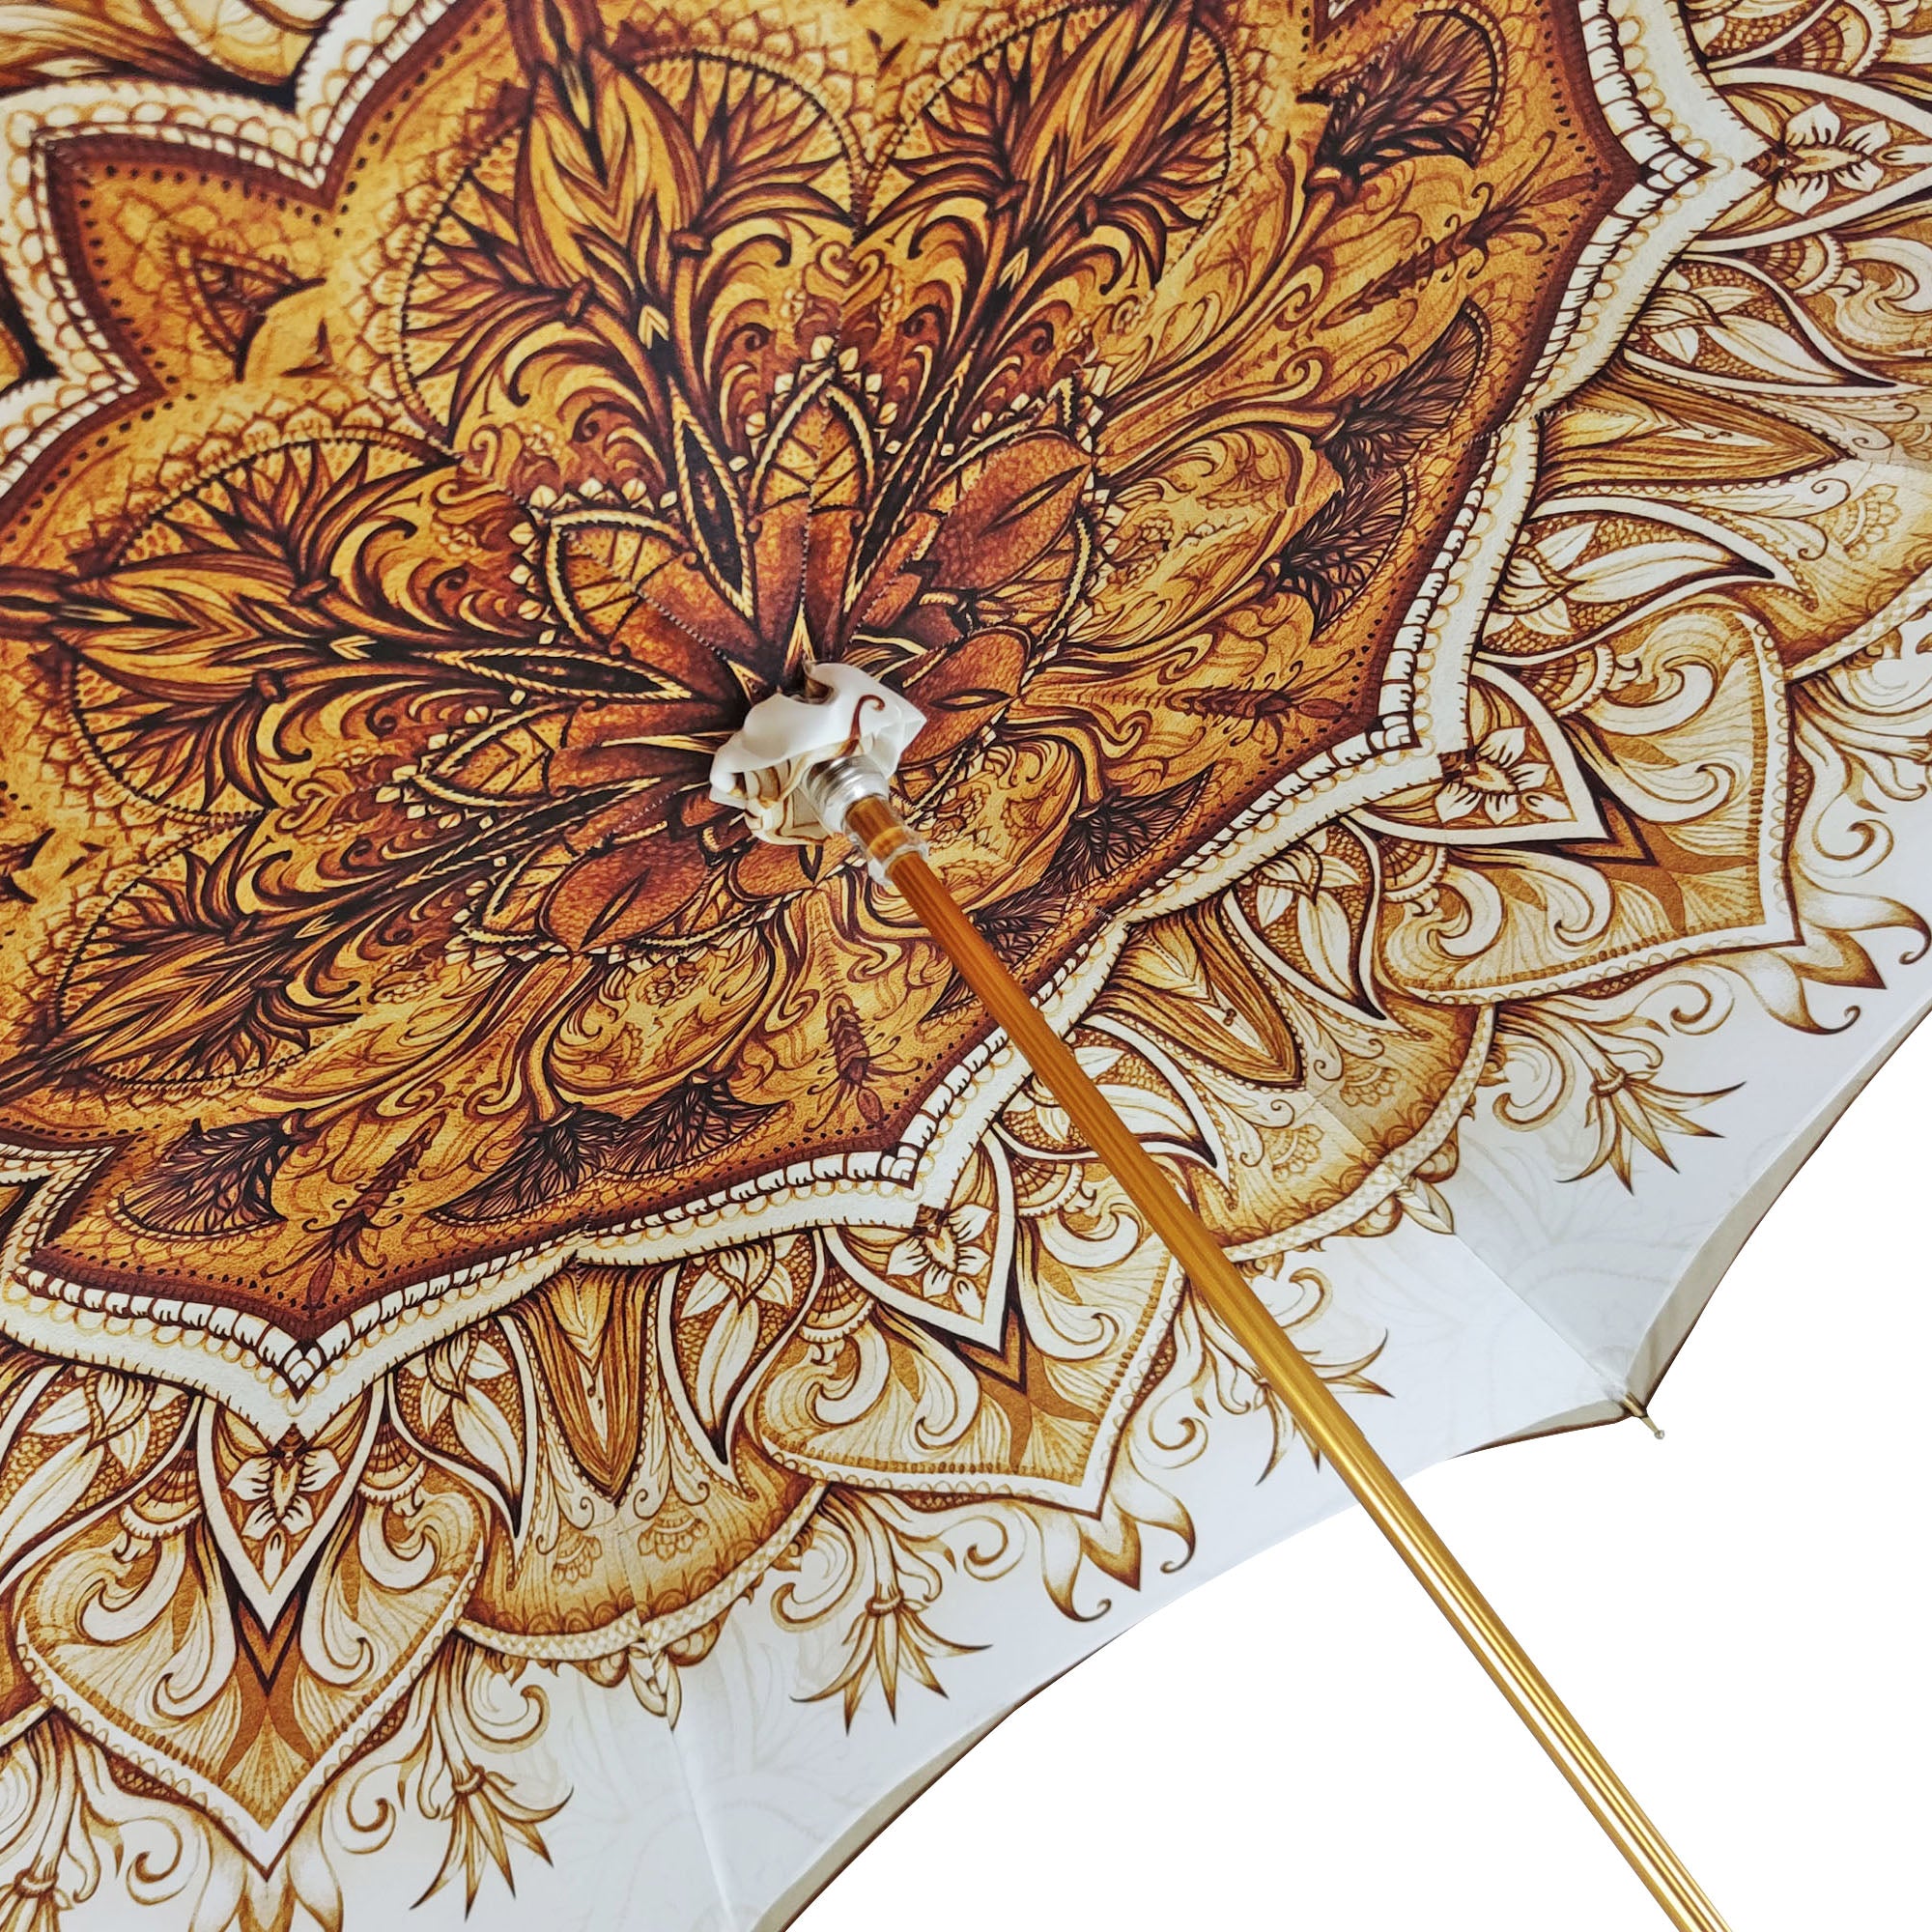 Classico ombrello fantasia con manico meraviglioso